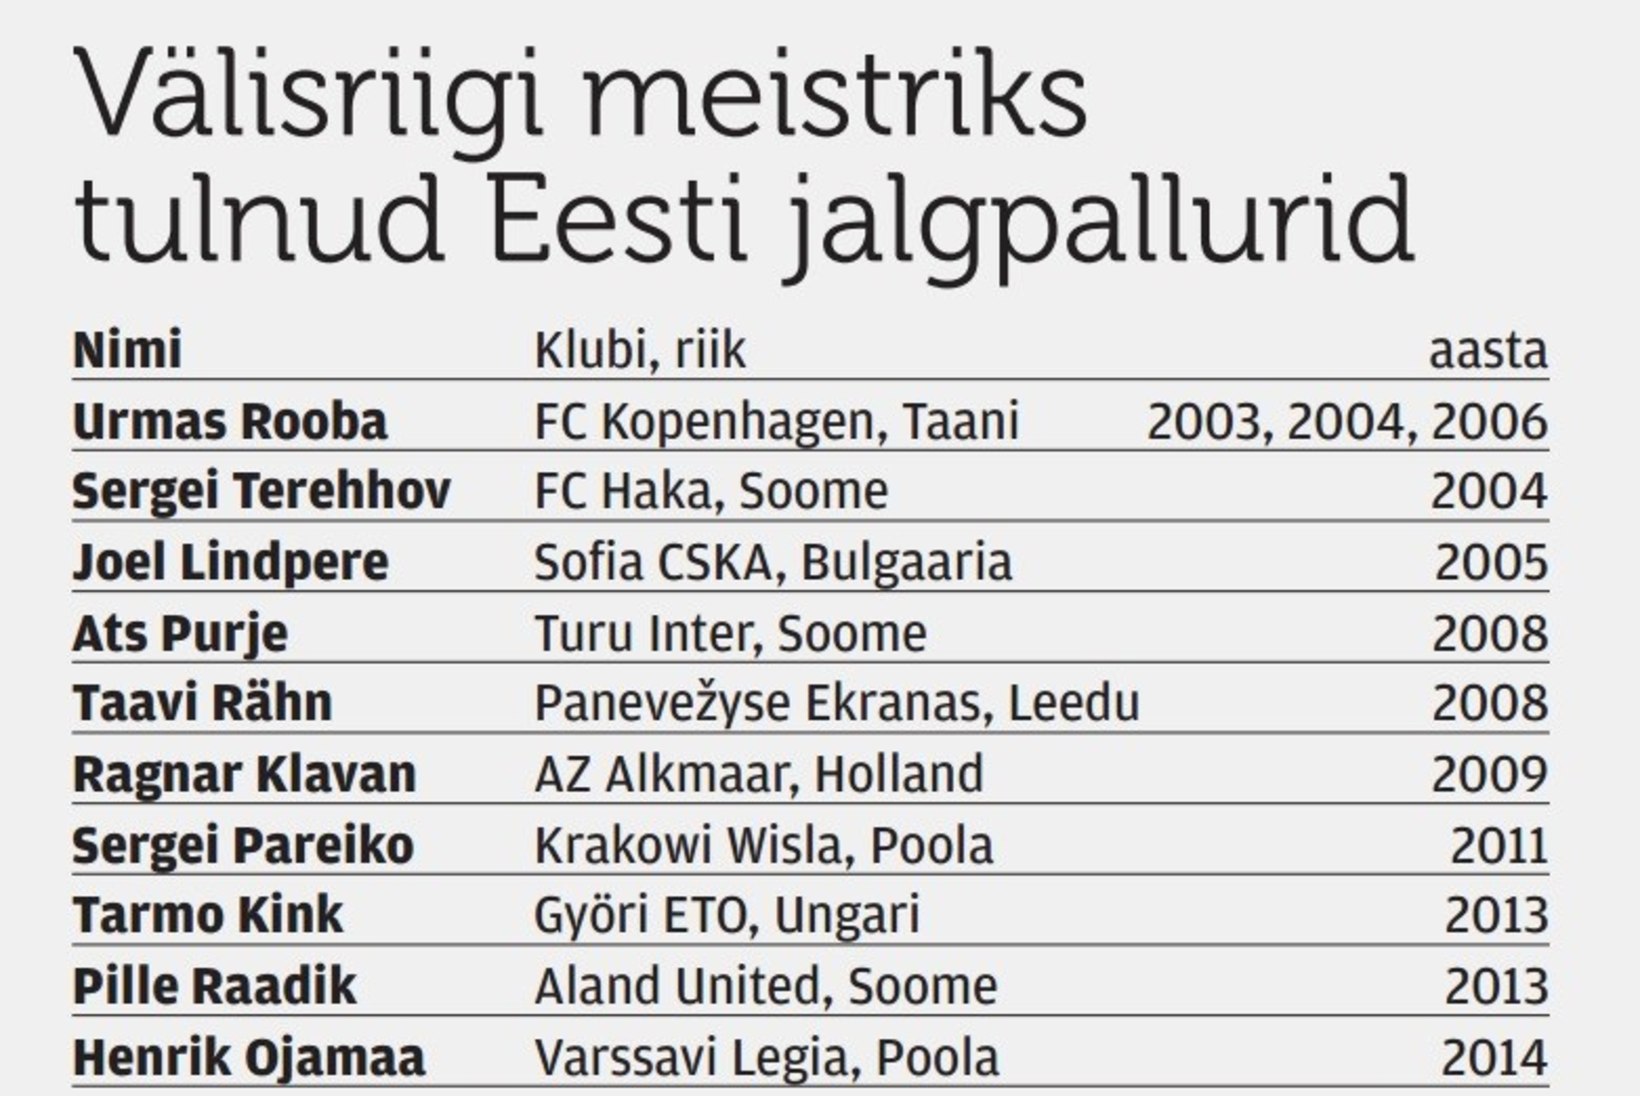 Eesti jalgpall sai 11. välisriigi meistri!